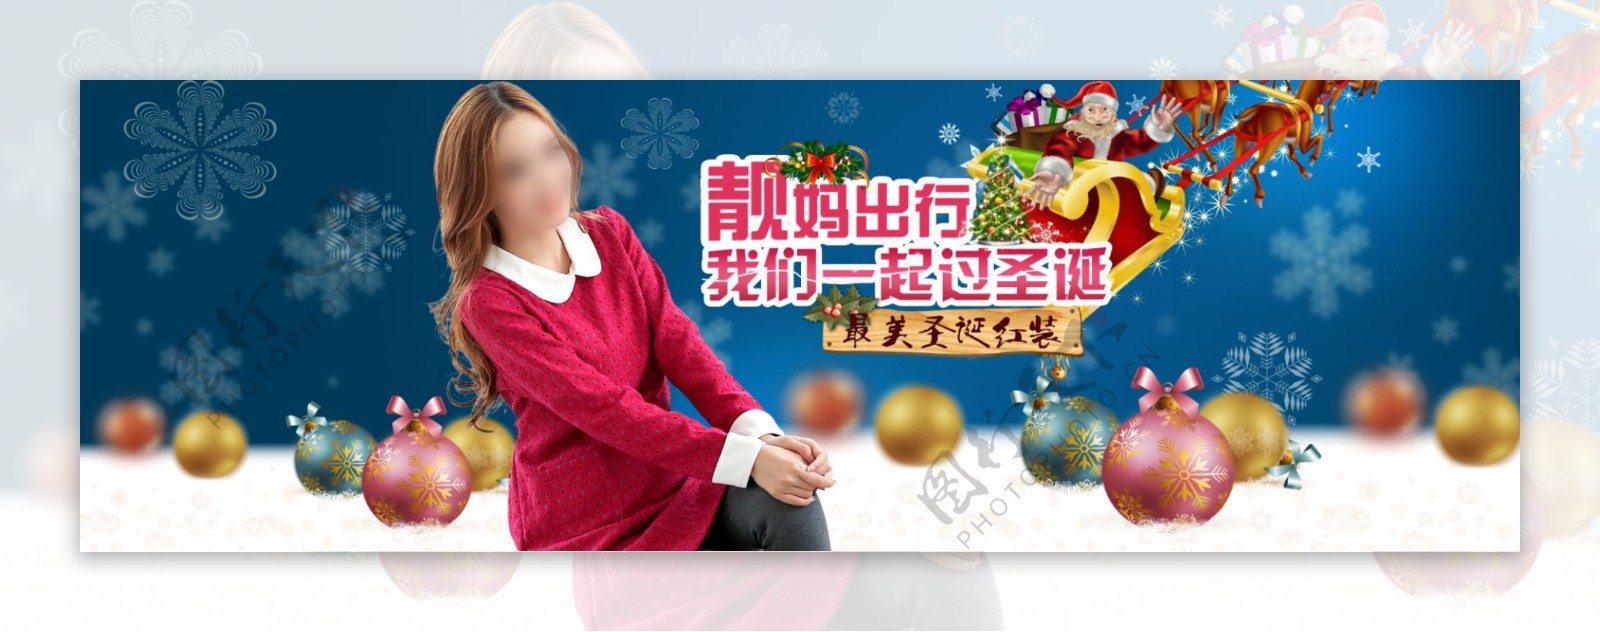 淘宝女装圣诞节促销海报设计PSD素材